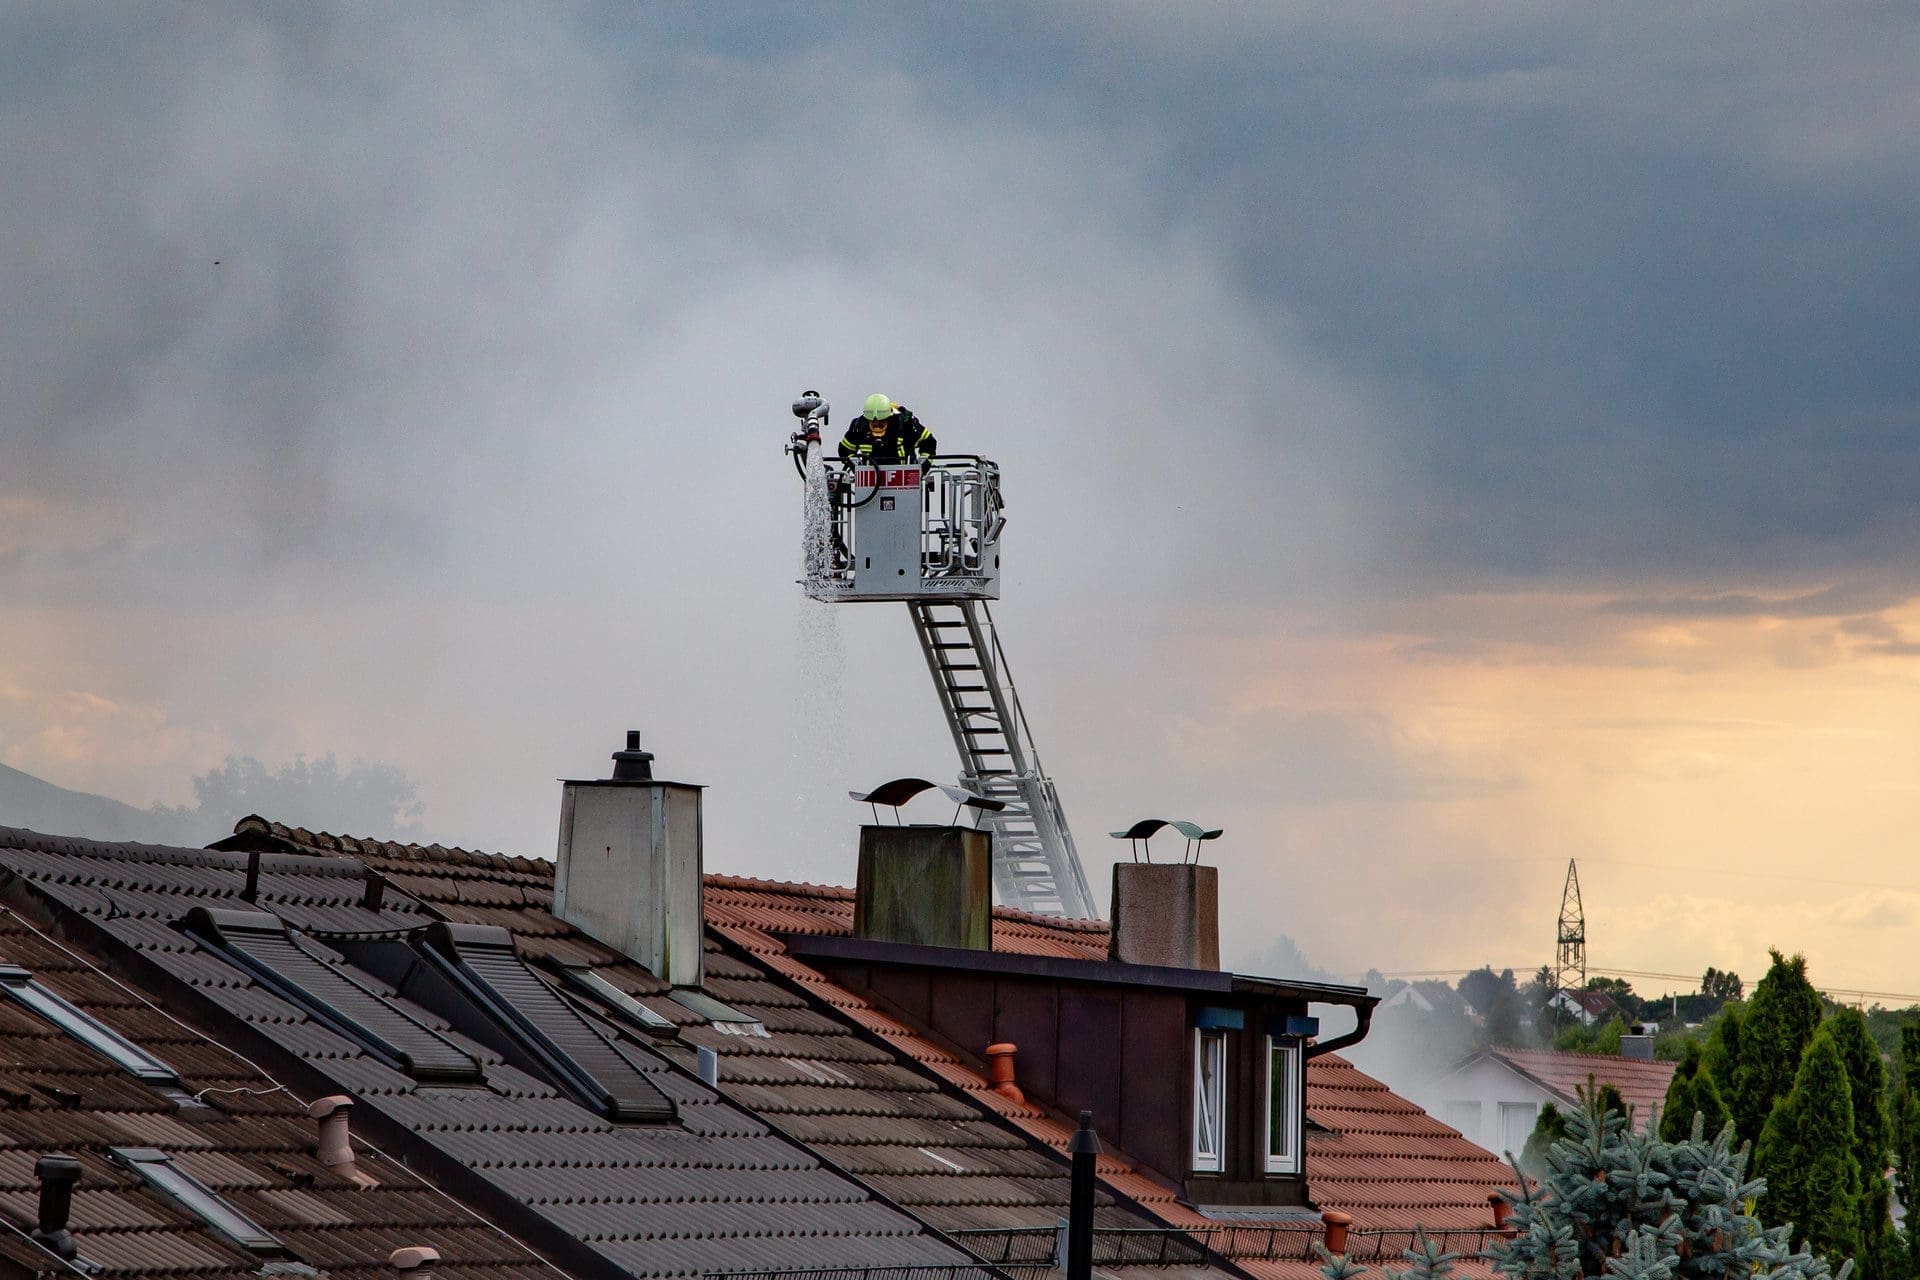 Feuerwehrmann inspiziert Dach und Schornstein von einer Drehleiter aus (© smartmediadesign / stock.adobe.com)